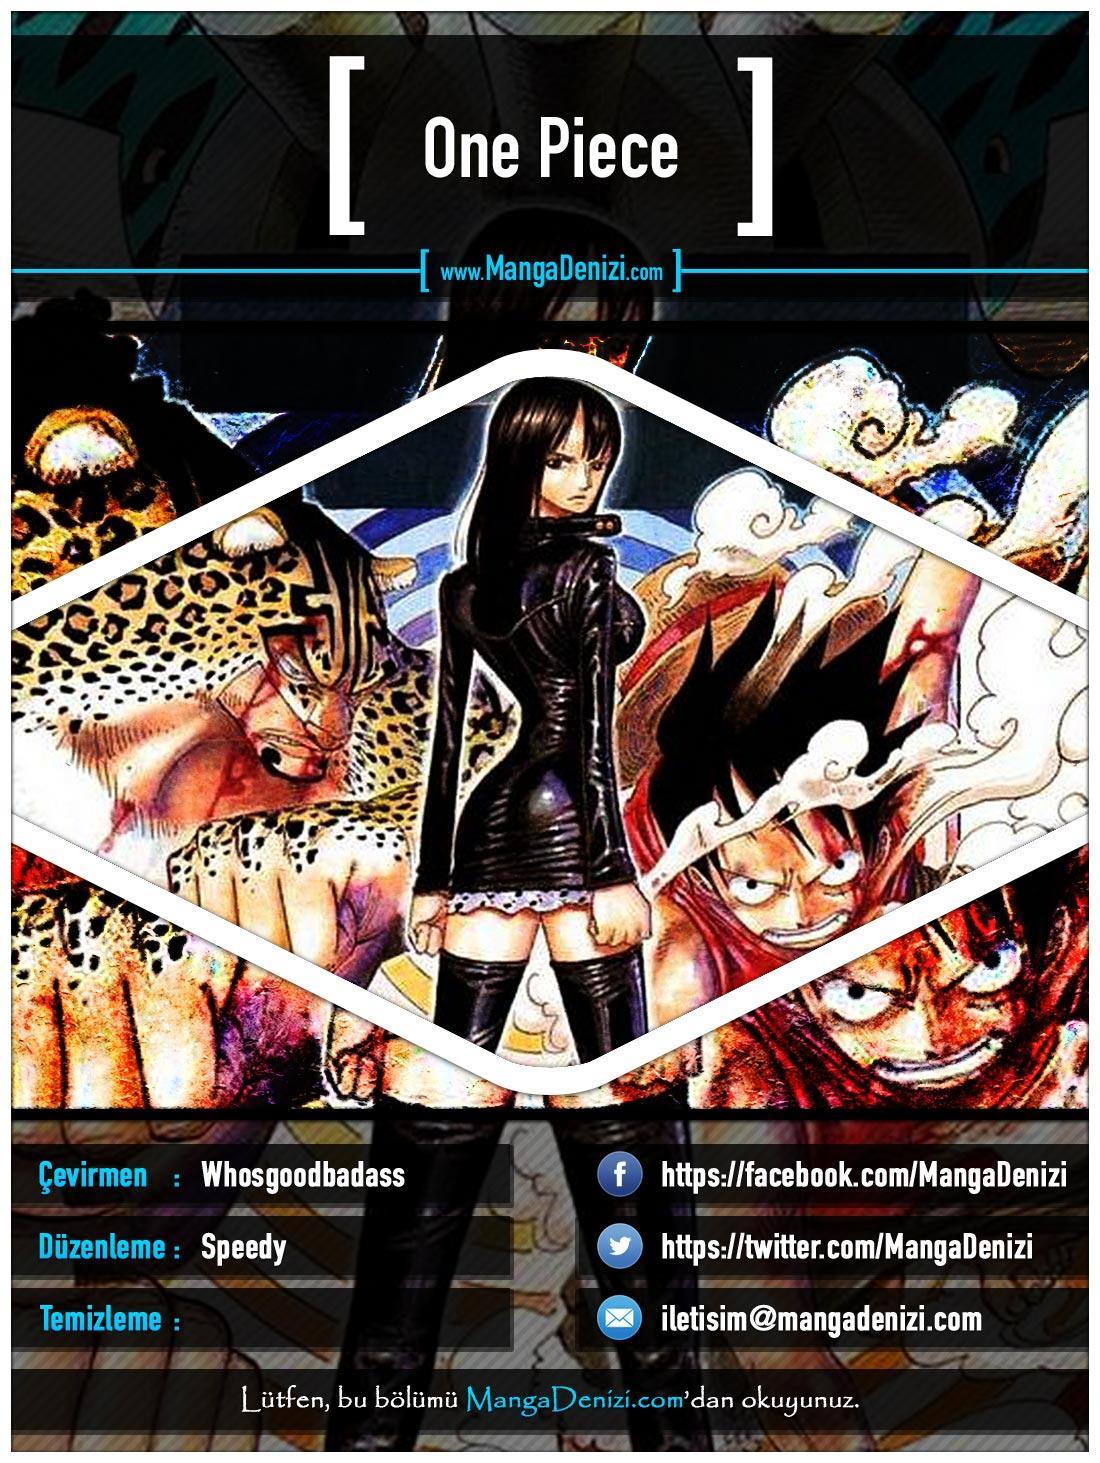 One Piece [Renkli] mangasının 0423 bölümünün 1. sayfasını okuyorsunuz.